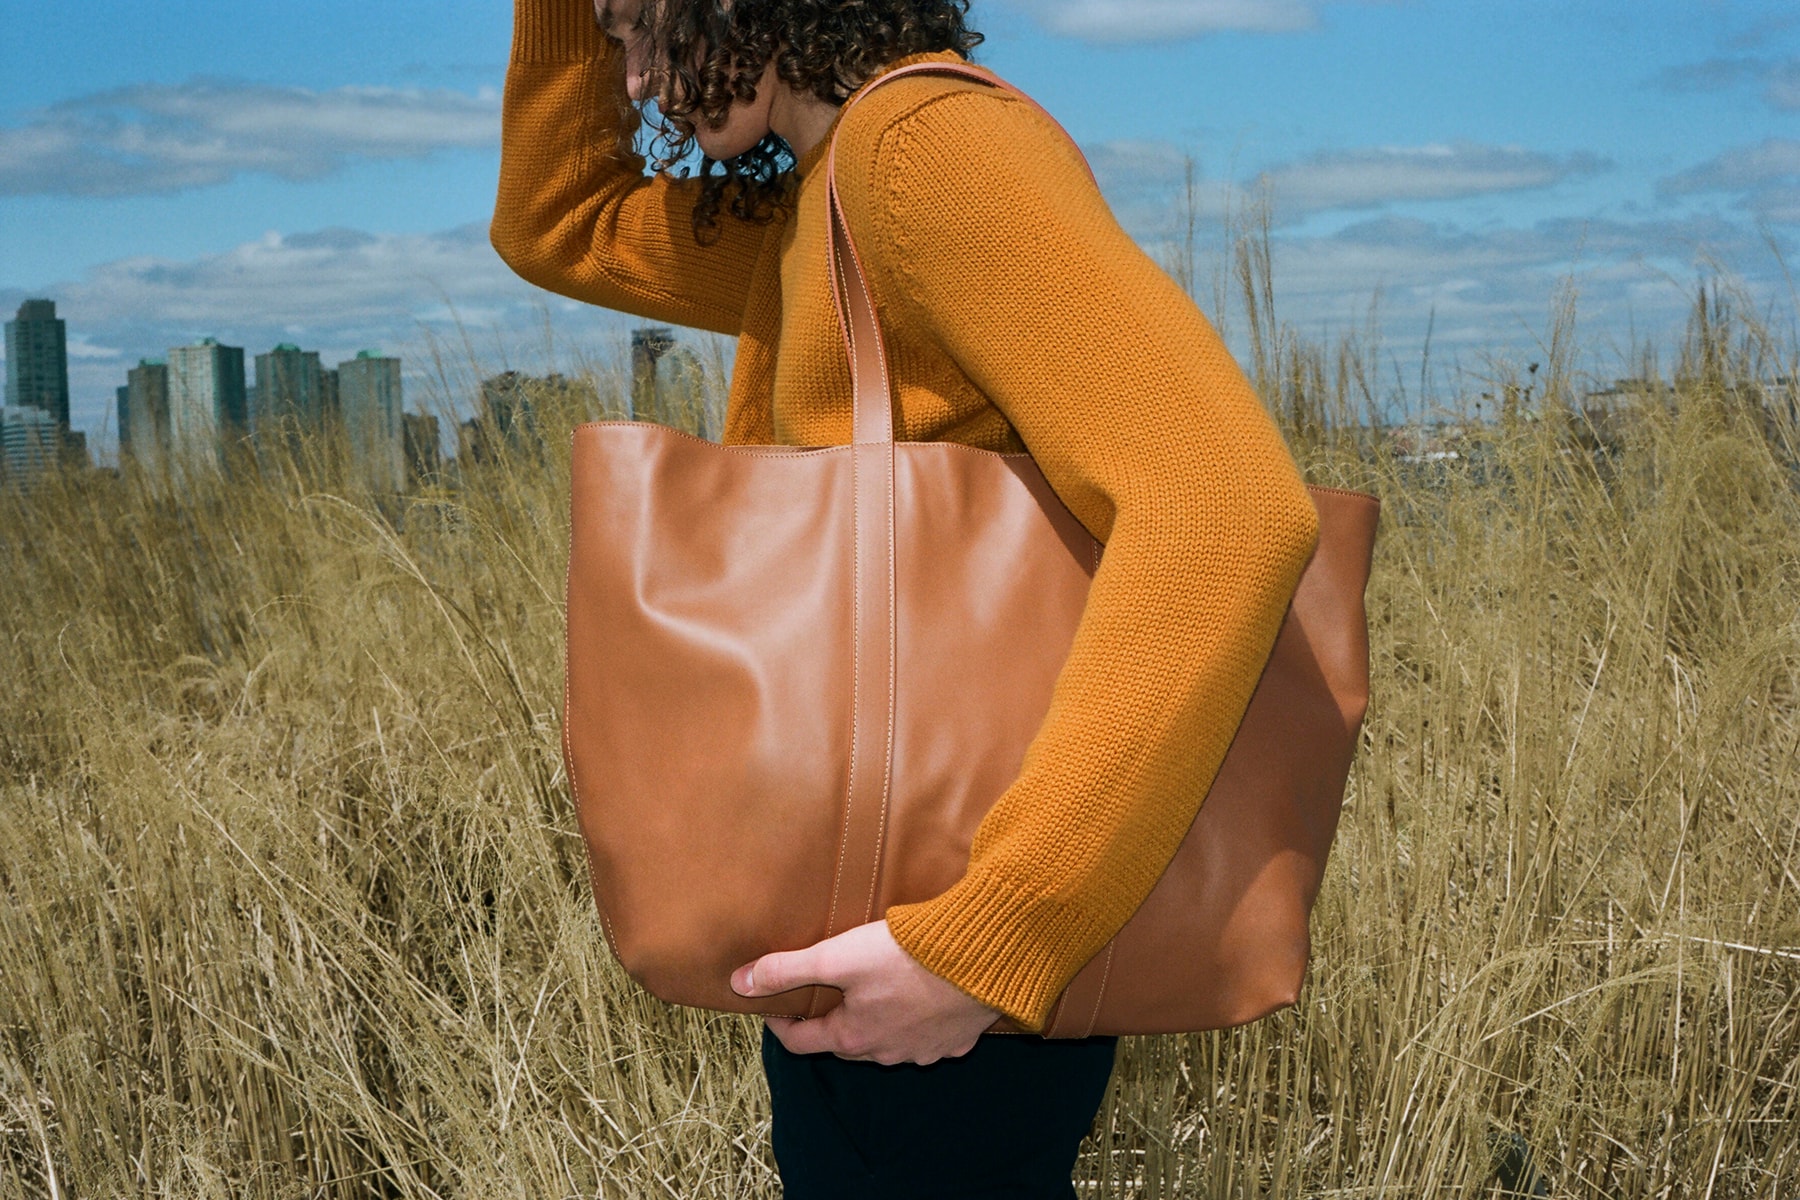 만수르 가브리엘 남성 액세서리 가방 컬렉션 론칭 2018 mansur gavriel mens accessories bags collection